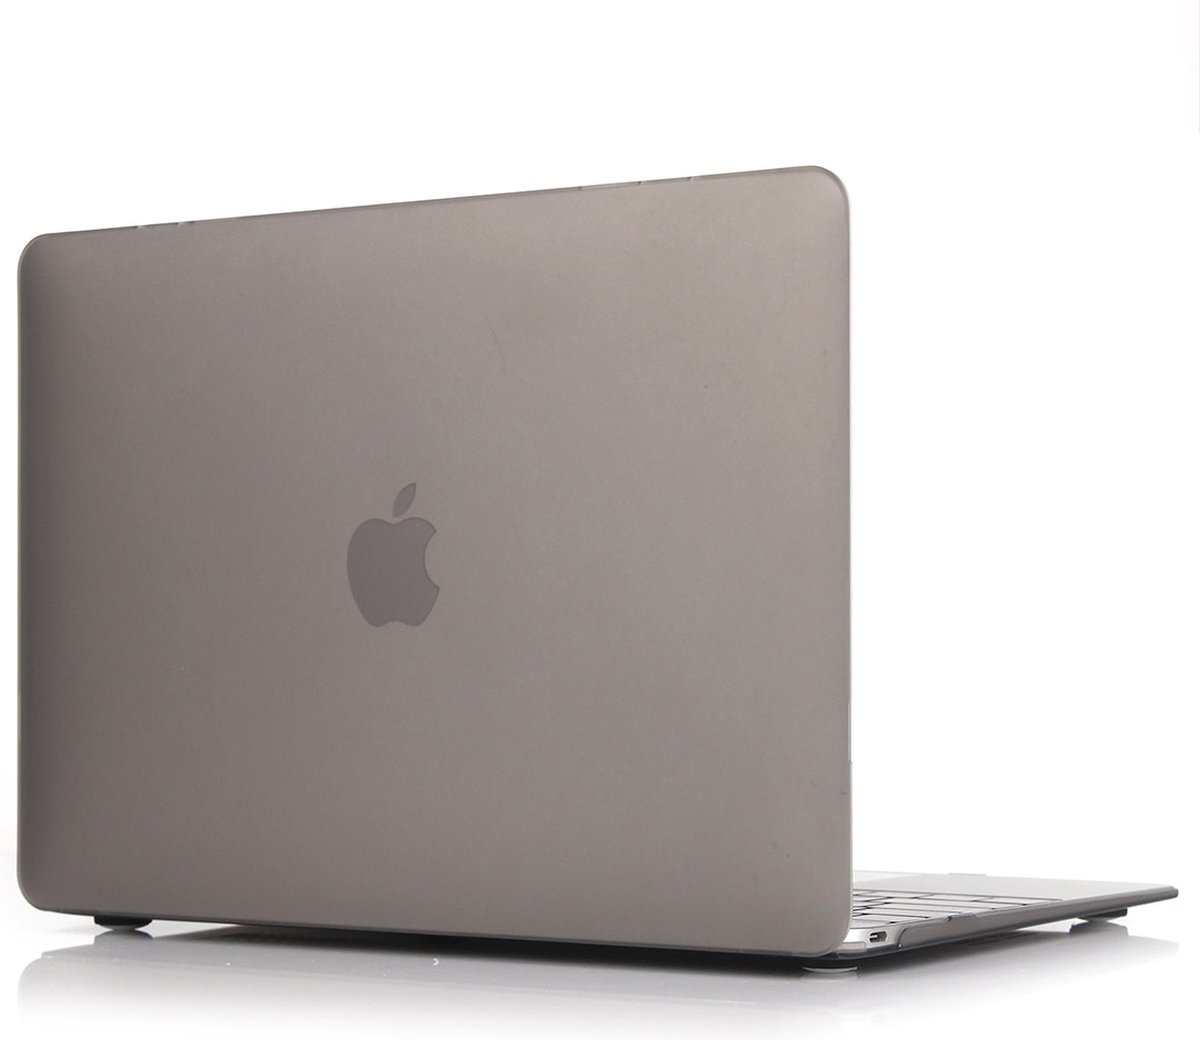 By Qubix MacBook Air 13 inch - Touch id versie - grijs (2018, 2019 & 2020)